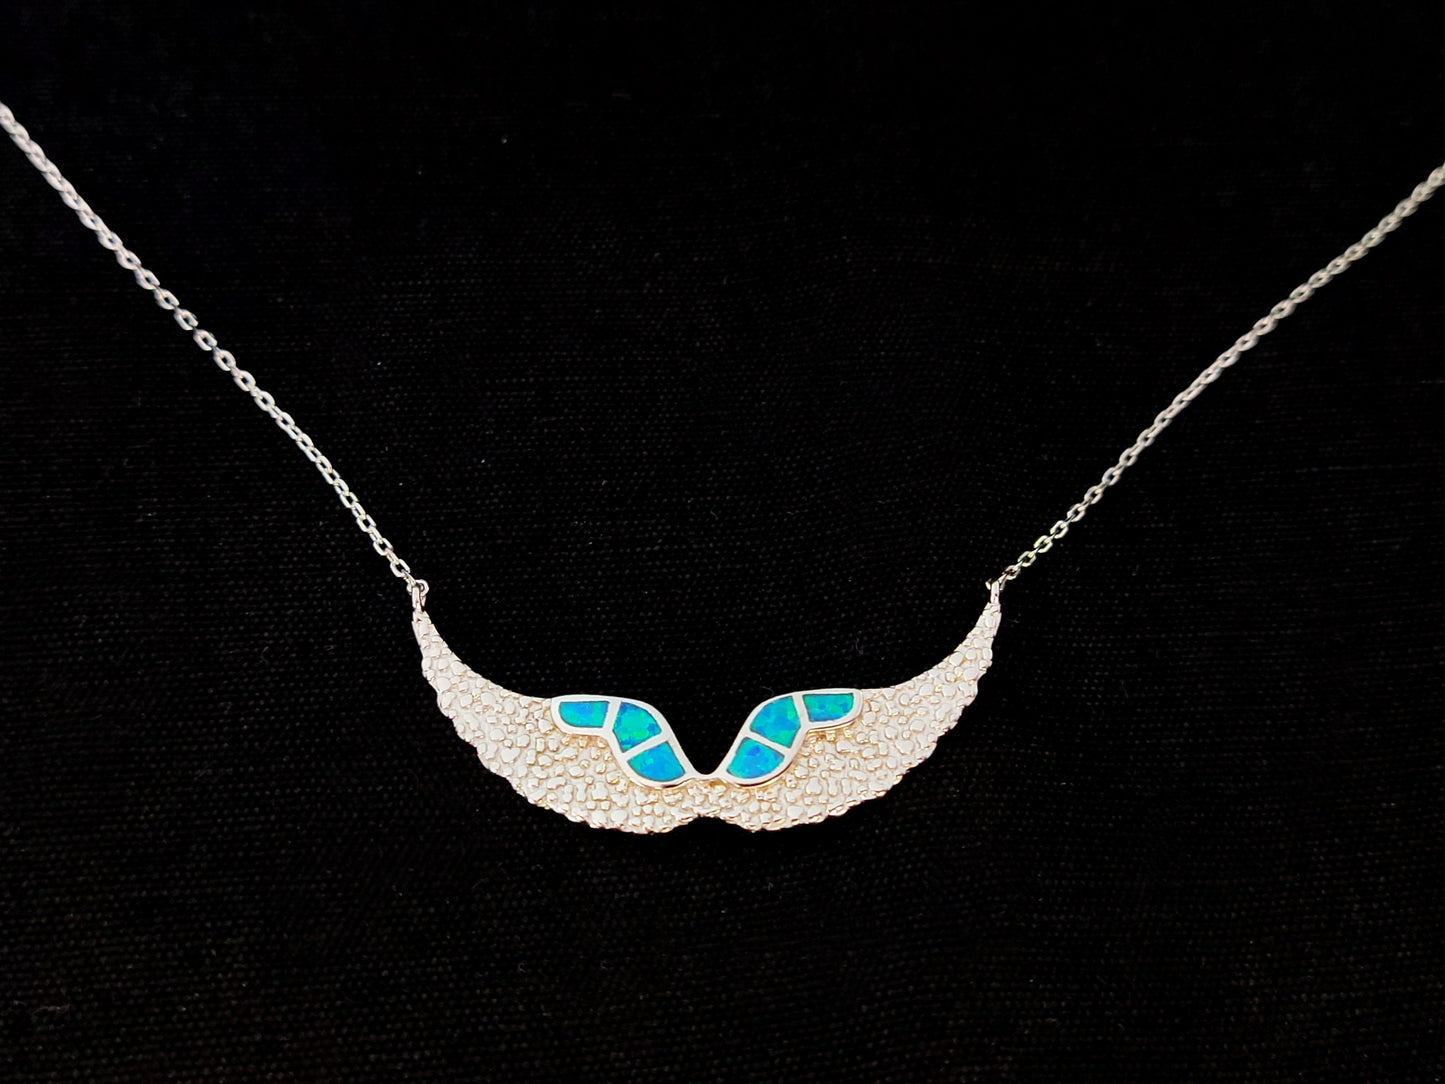 Sterling Silver 925 Fire Rainbow Blue Opal Angel Wings Chain Pendant Necklace, Griechischer Opal Kette, Bijoux Grecque, Greek Jewelry